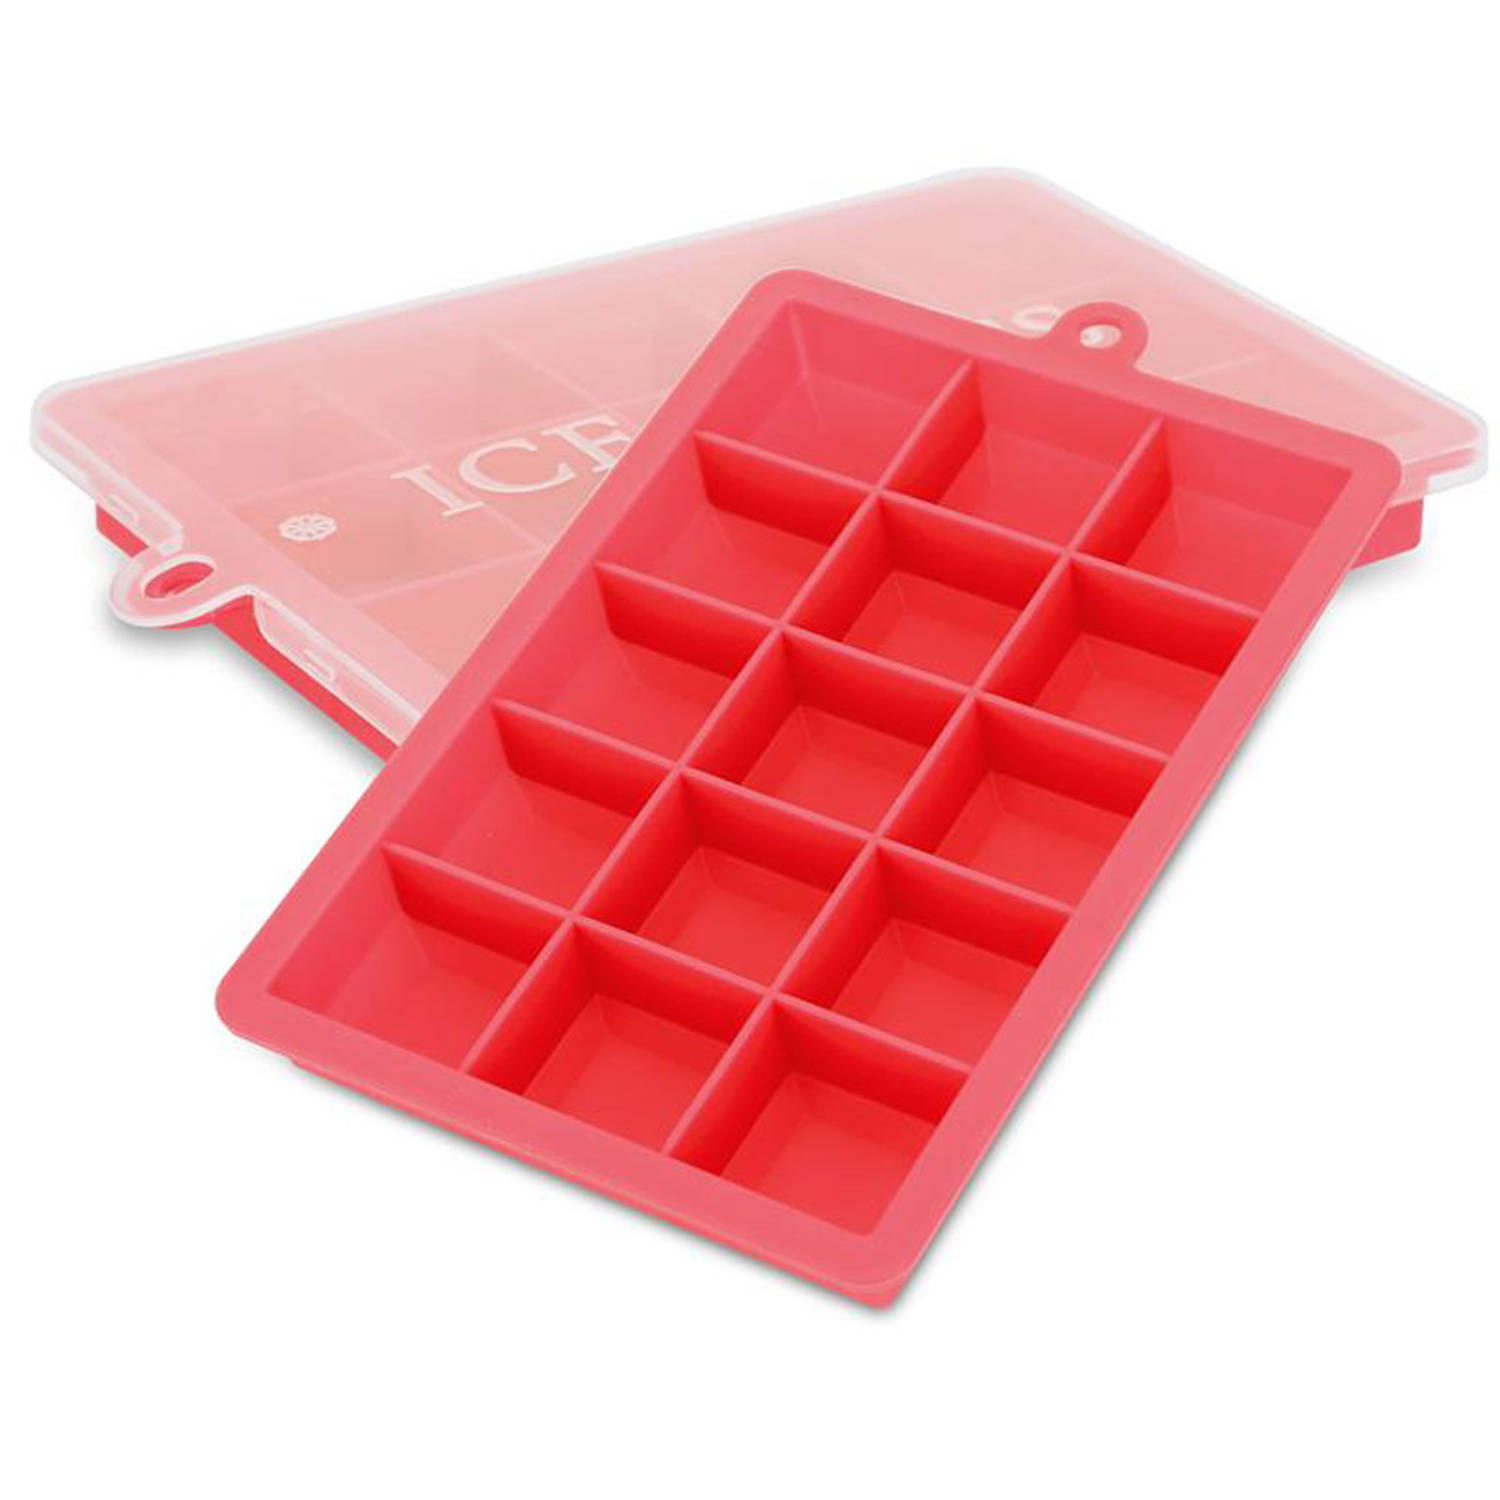 INTIRILIFE 2 x ijsblokjesvormen in rood – set van 2 à 15 vakken ijsblokjes siliconen vormen met deksel – flexibele ijsblokjeshouder afsluitbaar voor ijs, babyvoeding en meer